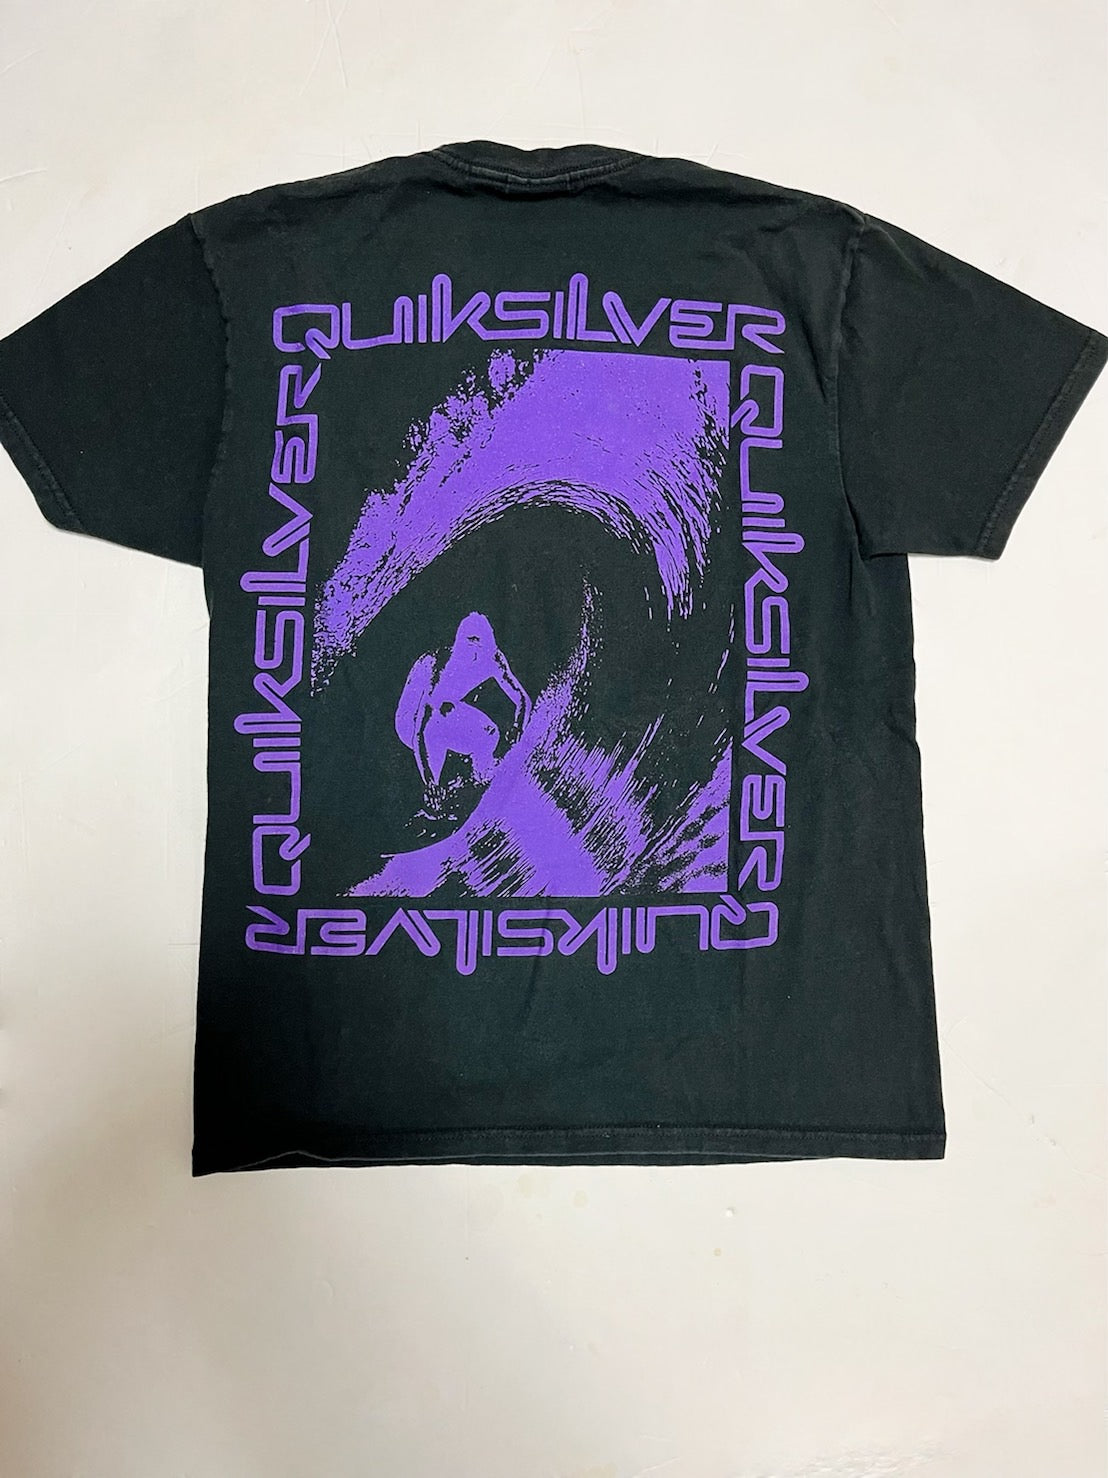 【QUIKSILVER】90’s クィックシルバー ヴィンテージサーフ Tシャツ (men's S)